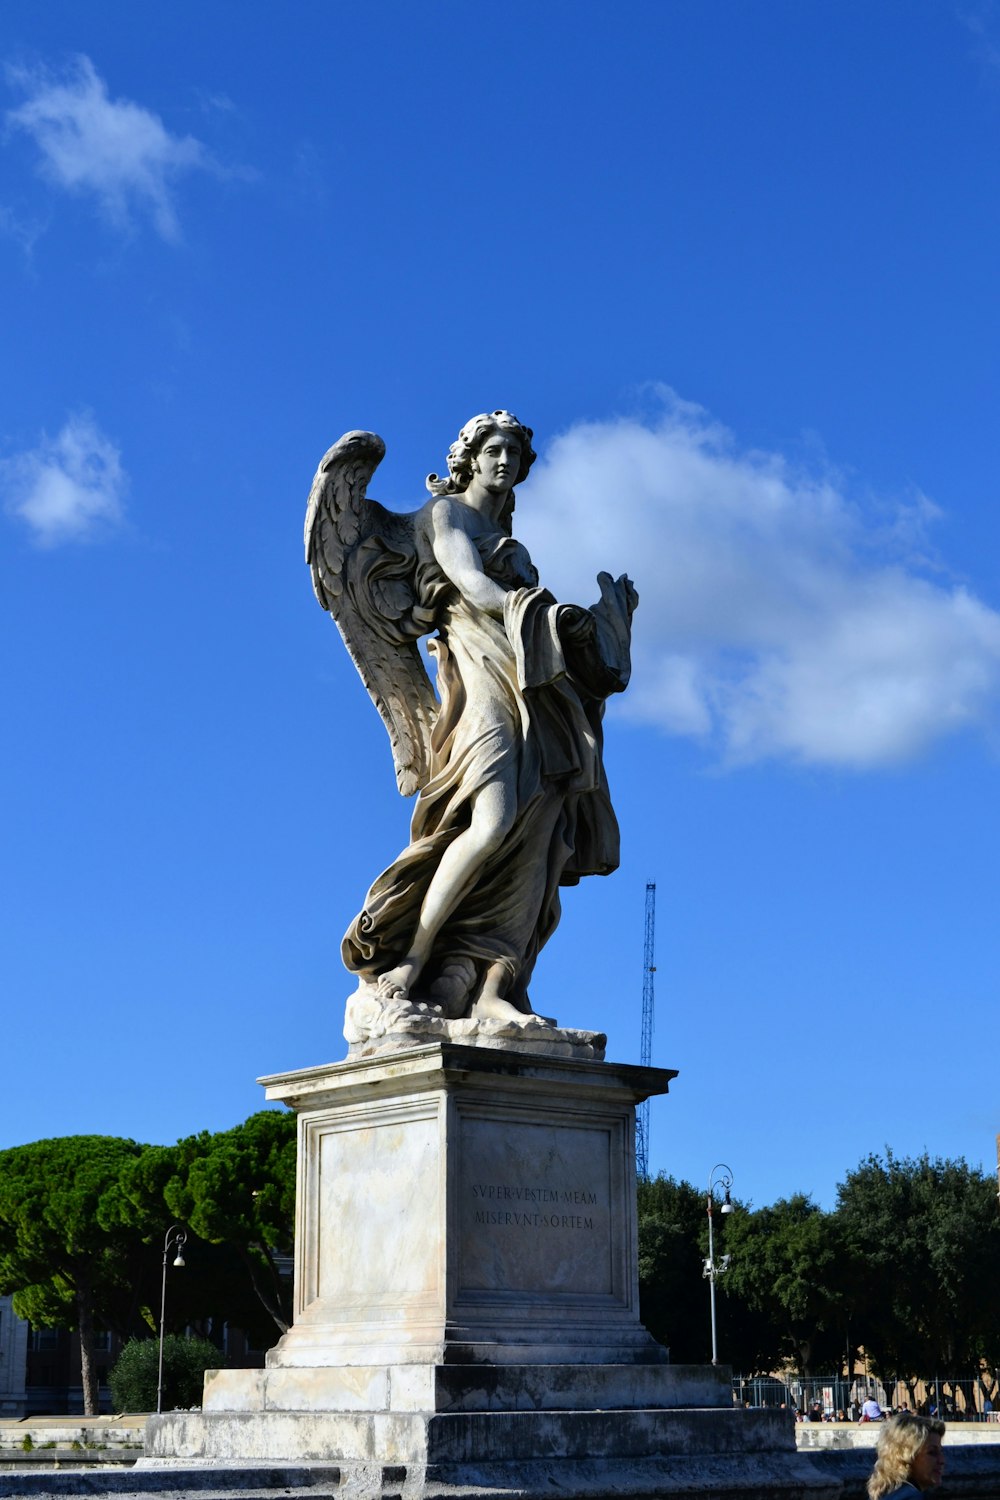 a statue of an angel on a pedestal